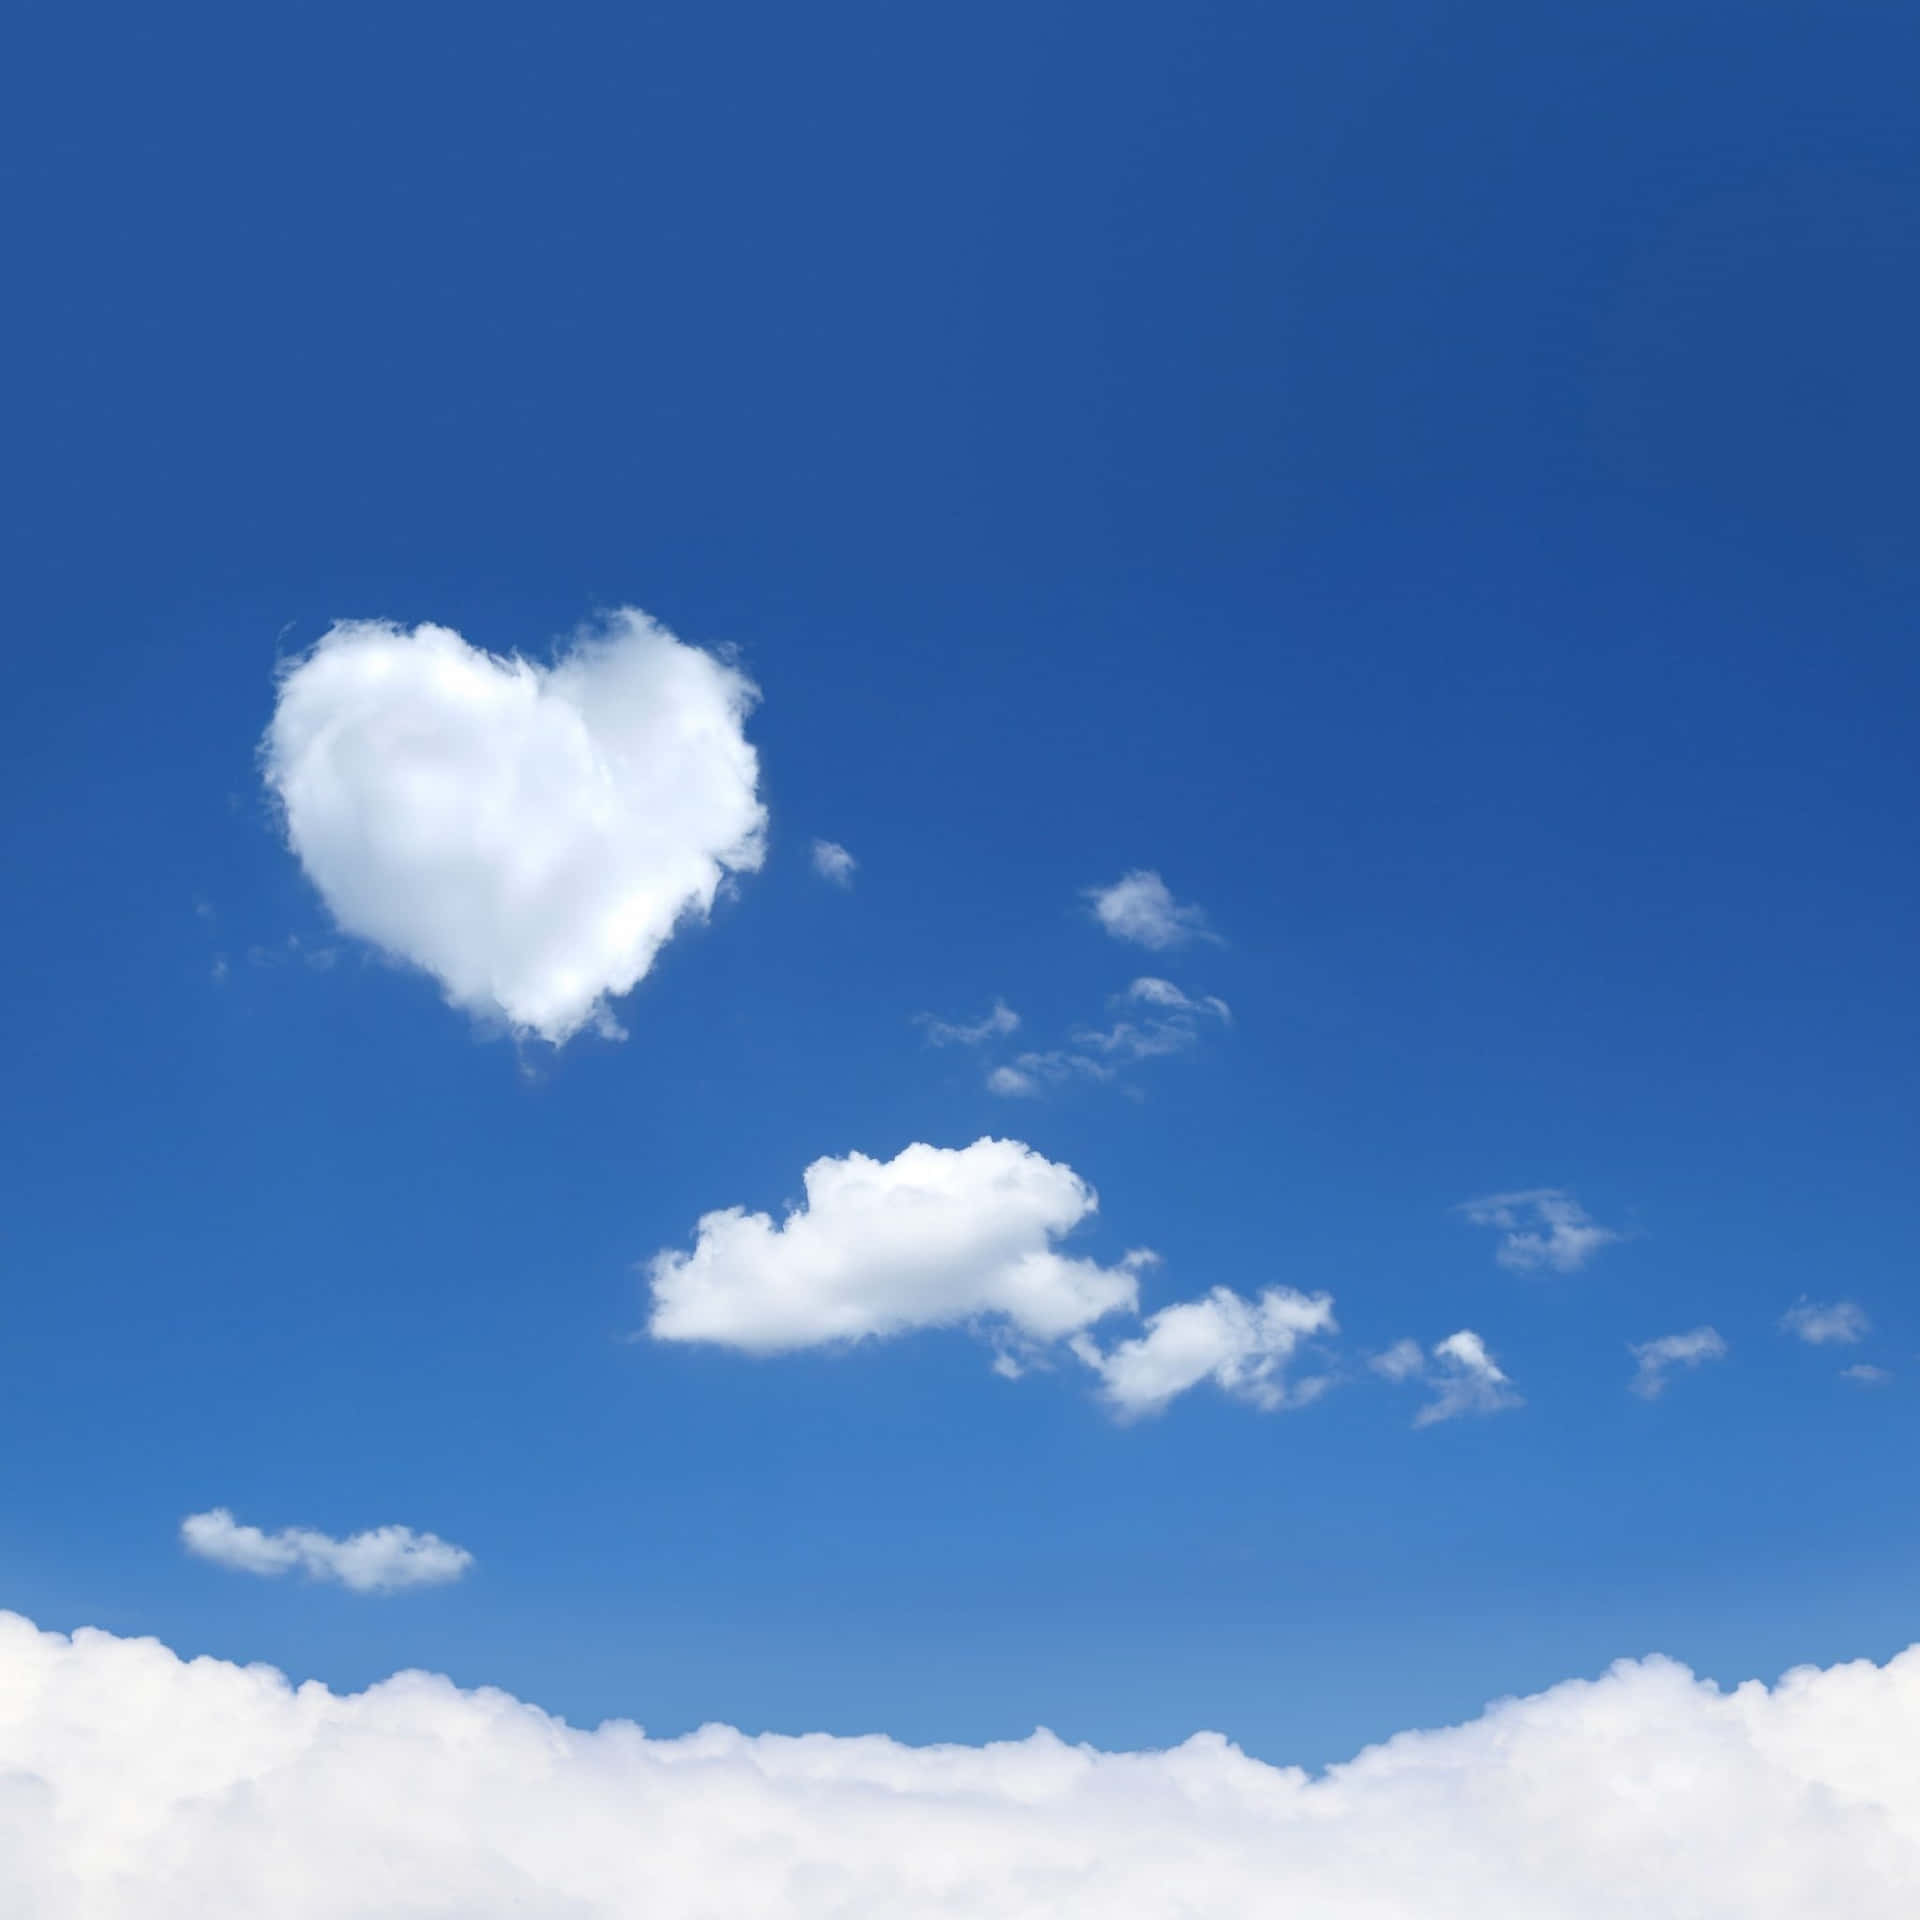 Heart Shaped Cloudin Blue Sky Wallpaper